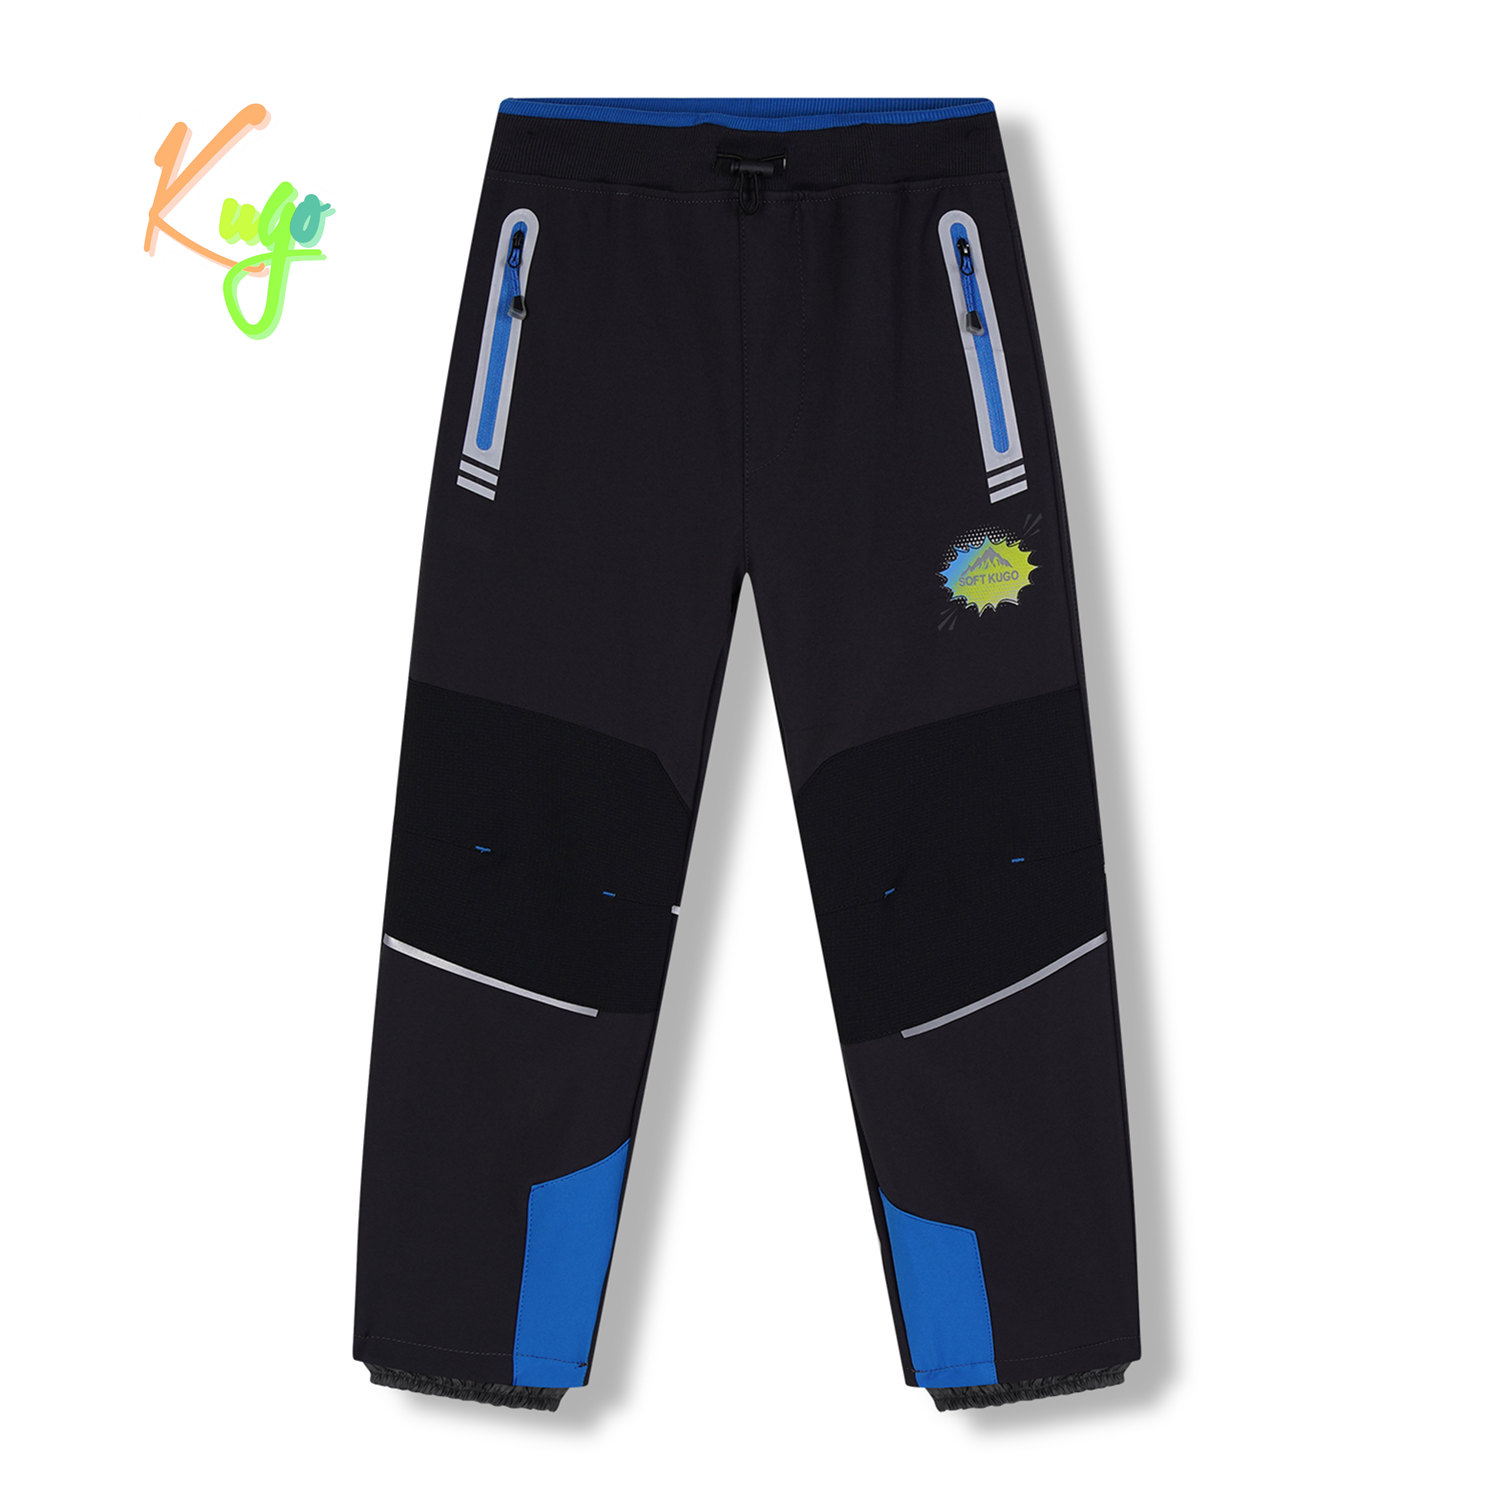 Chlapecké softshellové kalhoty, zateplené - KUGO HK5622, tmavě šedá / modré zipy Barva: Šedá, Velikost: 116